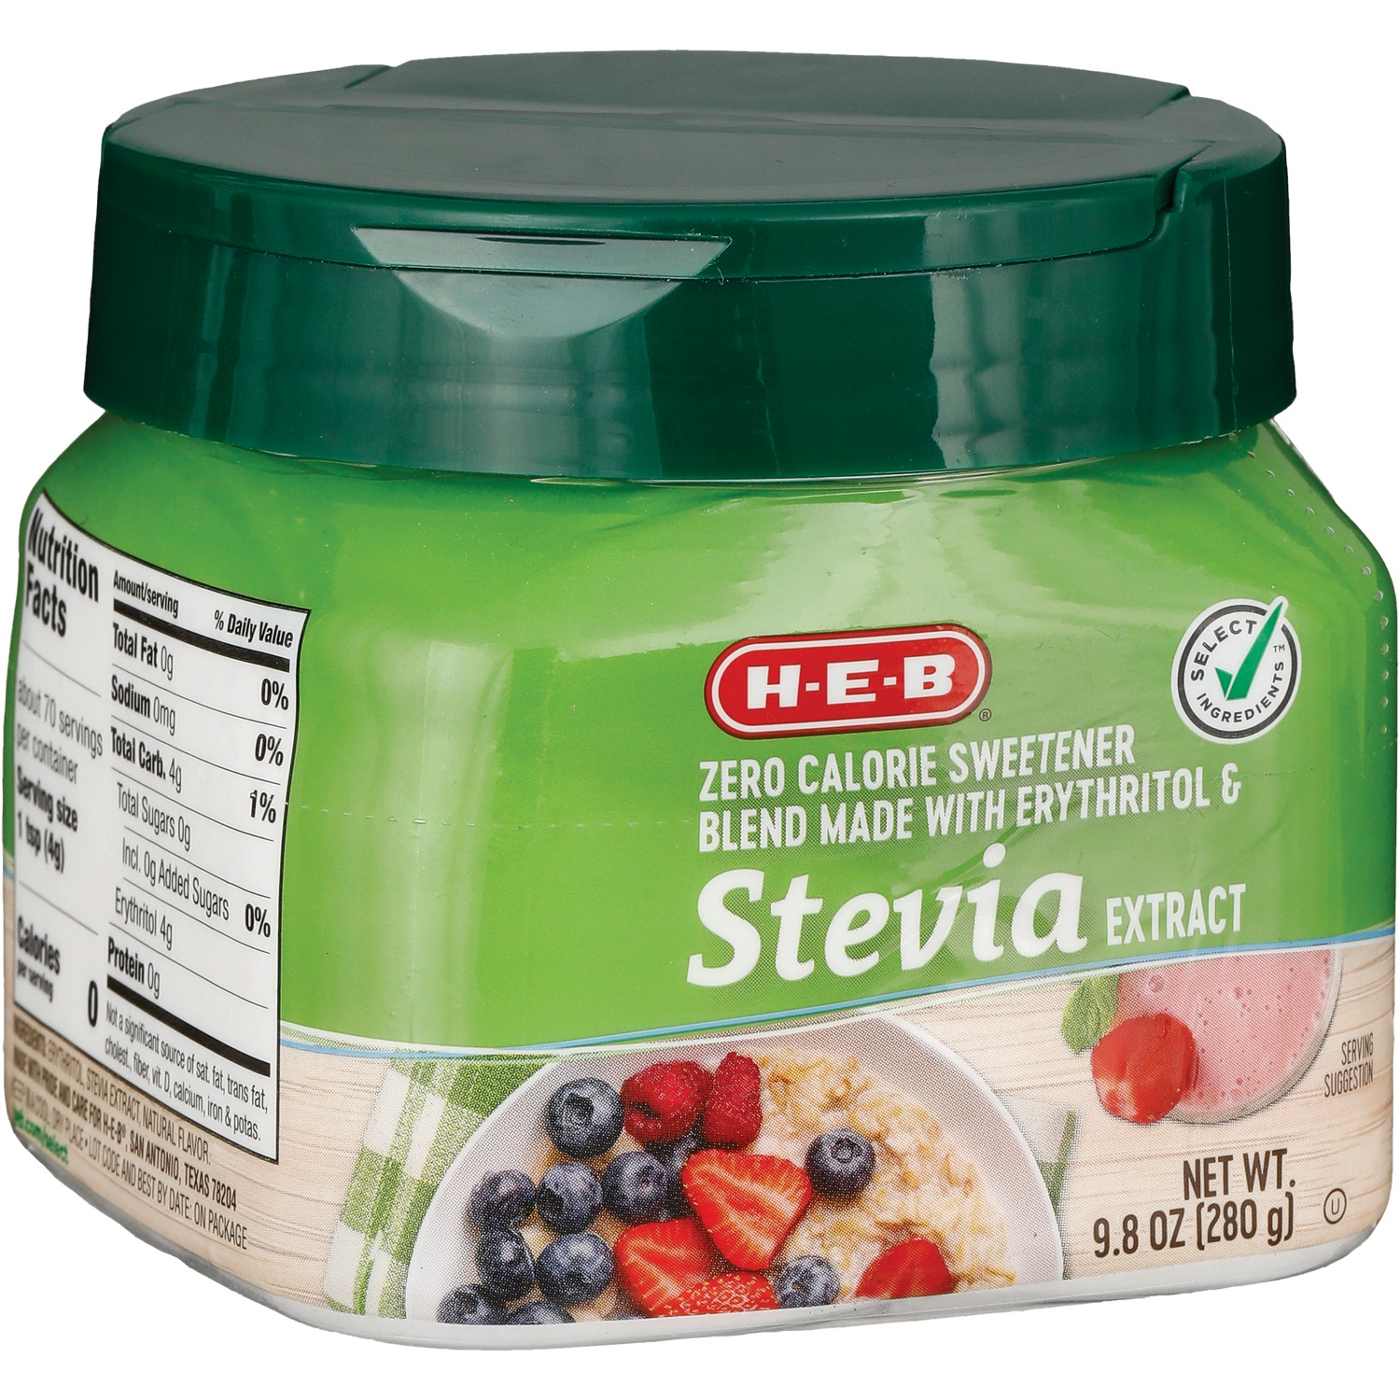 H-E-B Zero Calorie Stevia Blend Sweetener; image 2 of 2